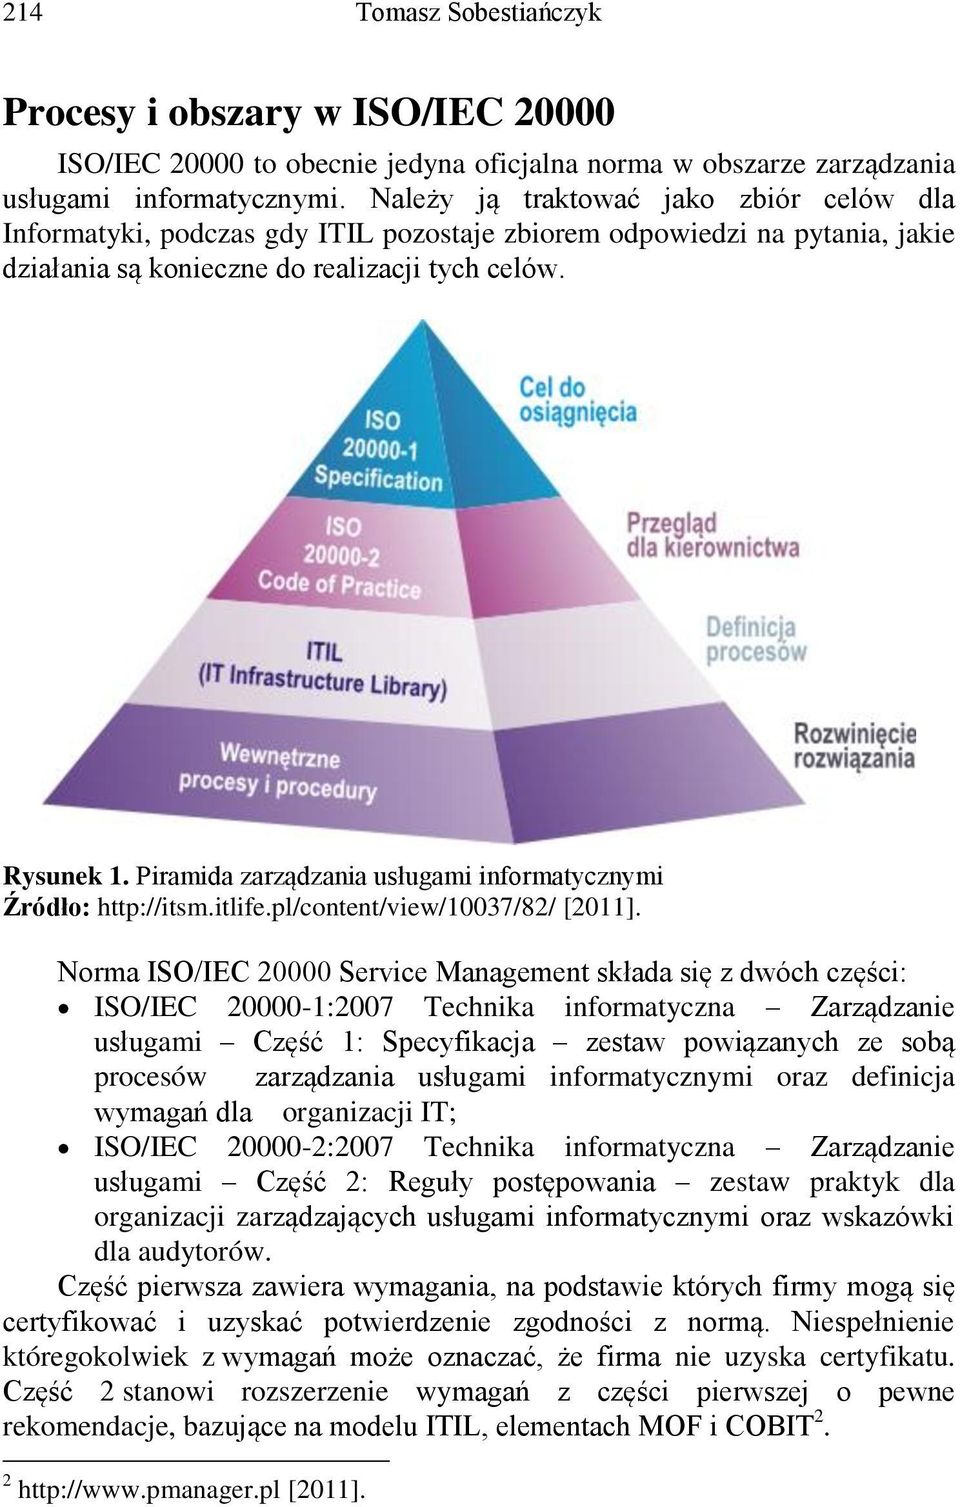 Piramida zarządzania usługami informatycznymi Źródło: http://itsm.itlife.pl/content/view/10037/82/ [2011].